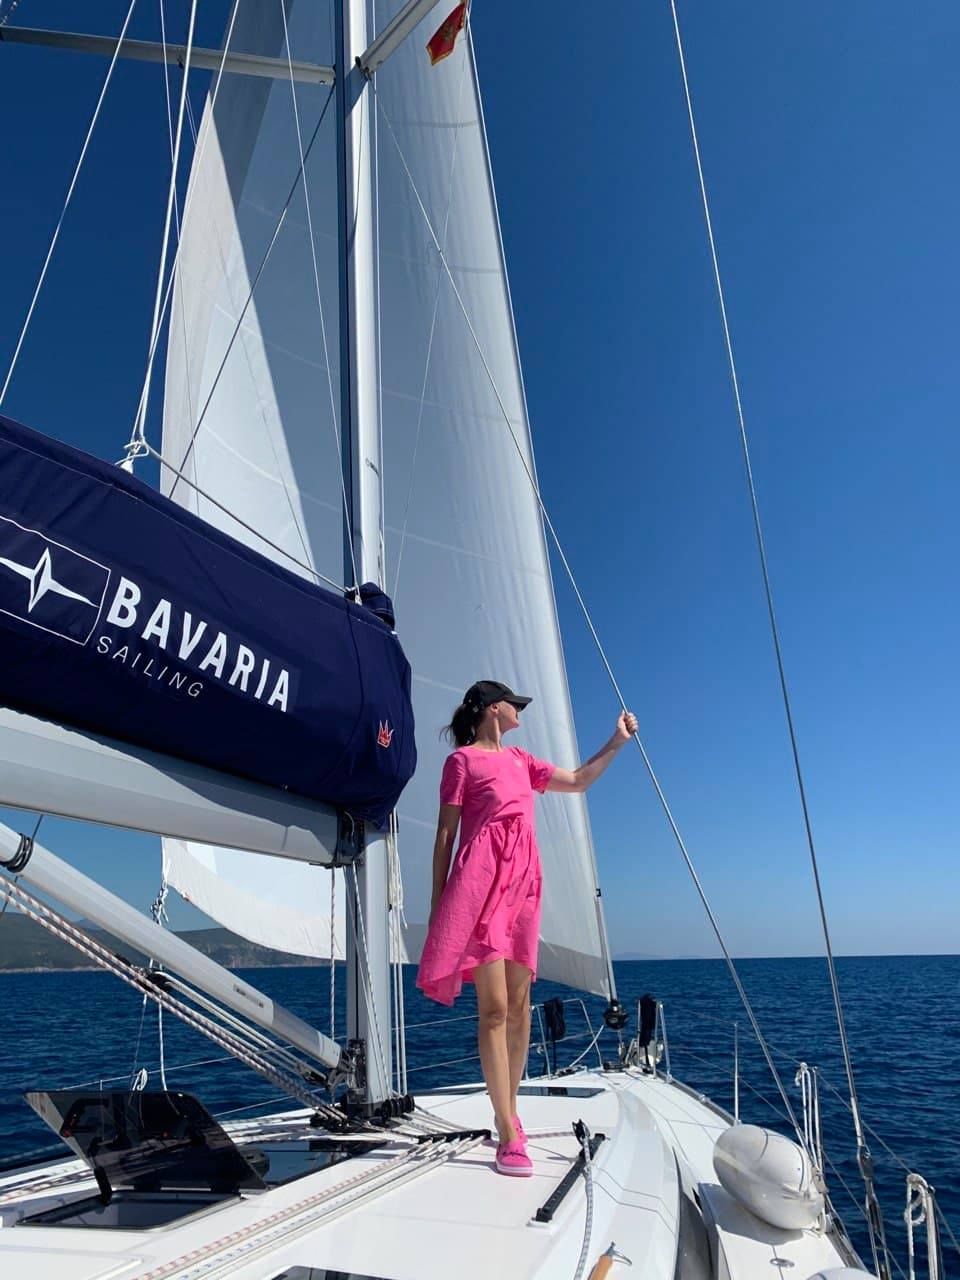 Sail trip on Bavaria yacht